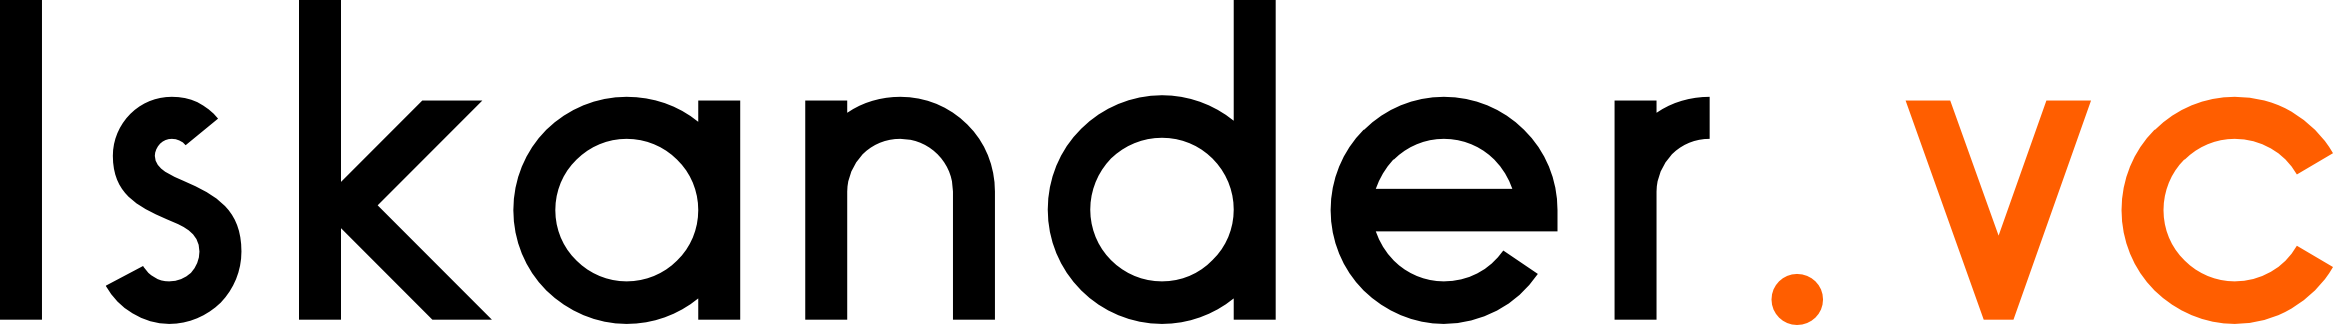 iskander logo